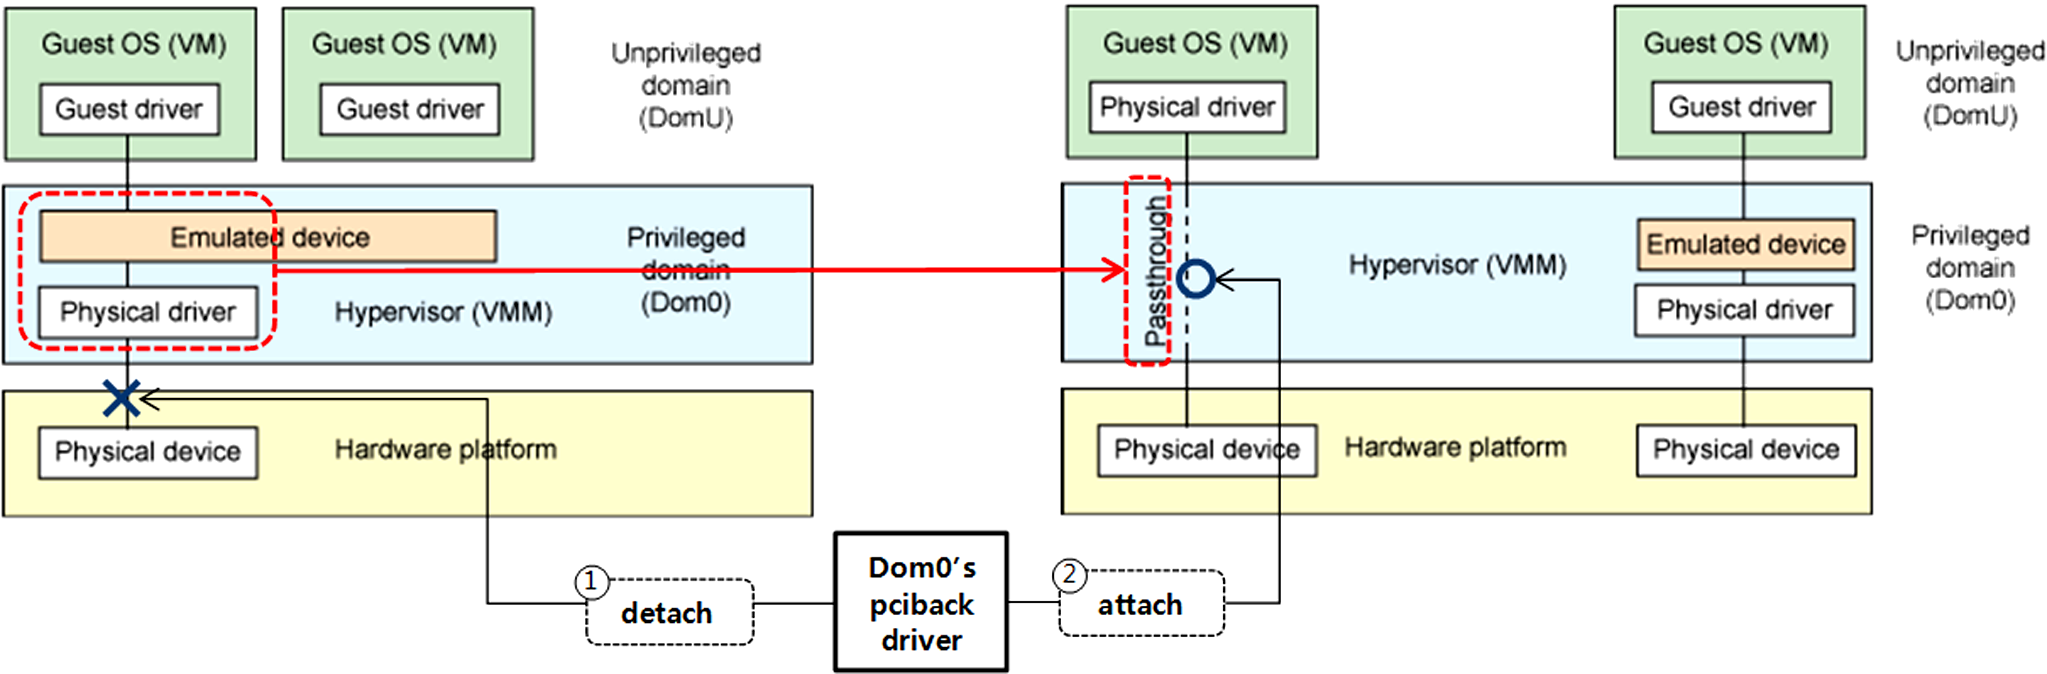 508 정보과학회 컴퓨팅의 실제 논문지 제 21 권 제 7 호(2015. 7) 그림 1 입출력 가상화 기반 가상 플랫폼 구조 Fig. 1 Architecture of a Virtual Platform based on IOV SR-IOV(Single Root-I/O Virtualization) 기술들이 사 용되고 있다.